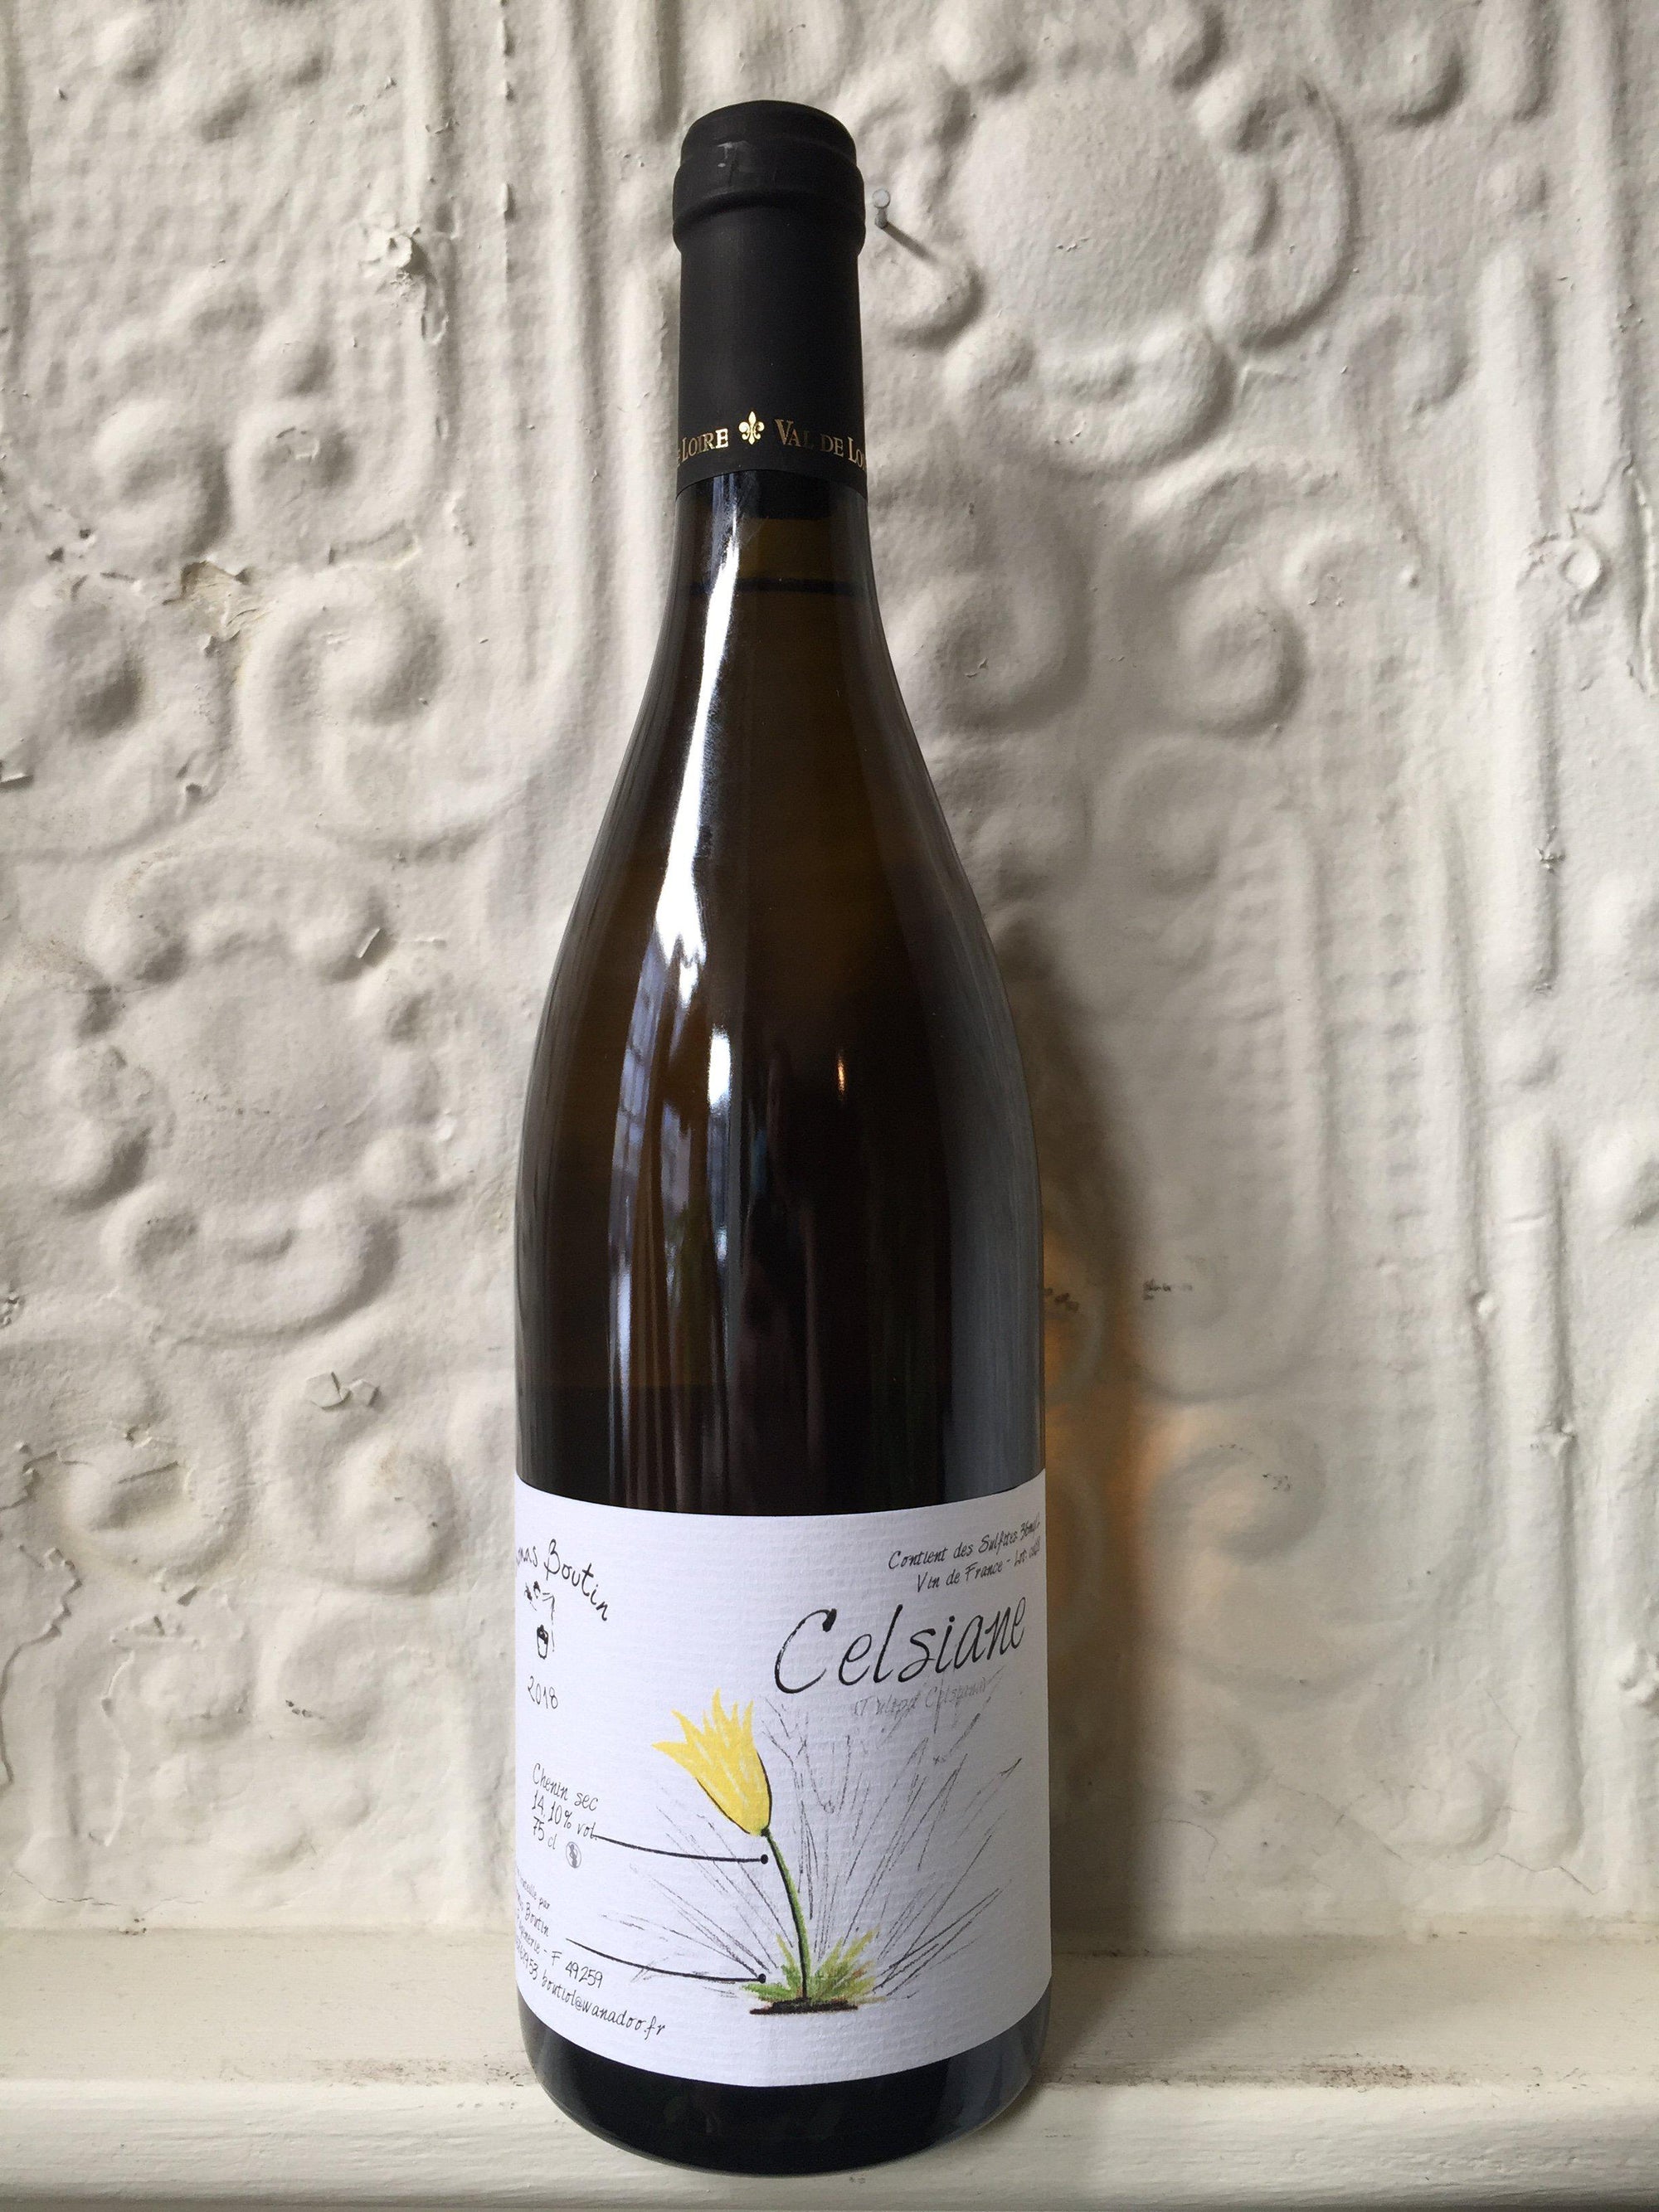 Chenin Blanc "Celsiane", Thomas Boutin 2019 (Loire, France)-Wine-Bibber & Bell